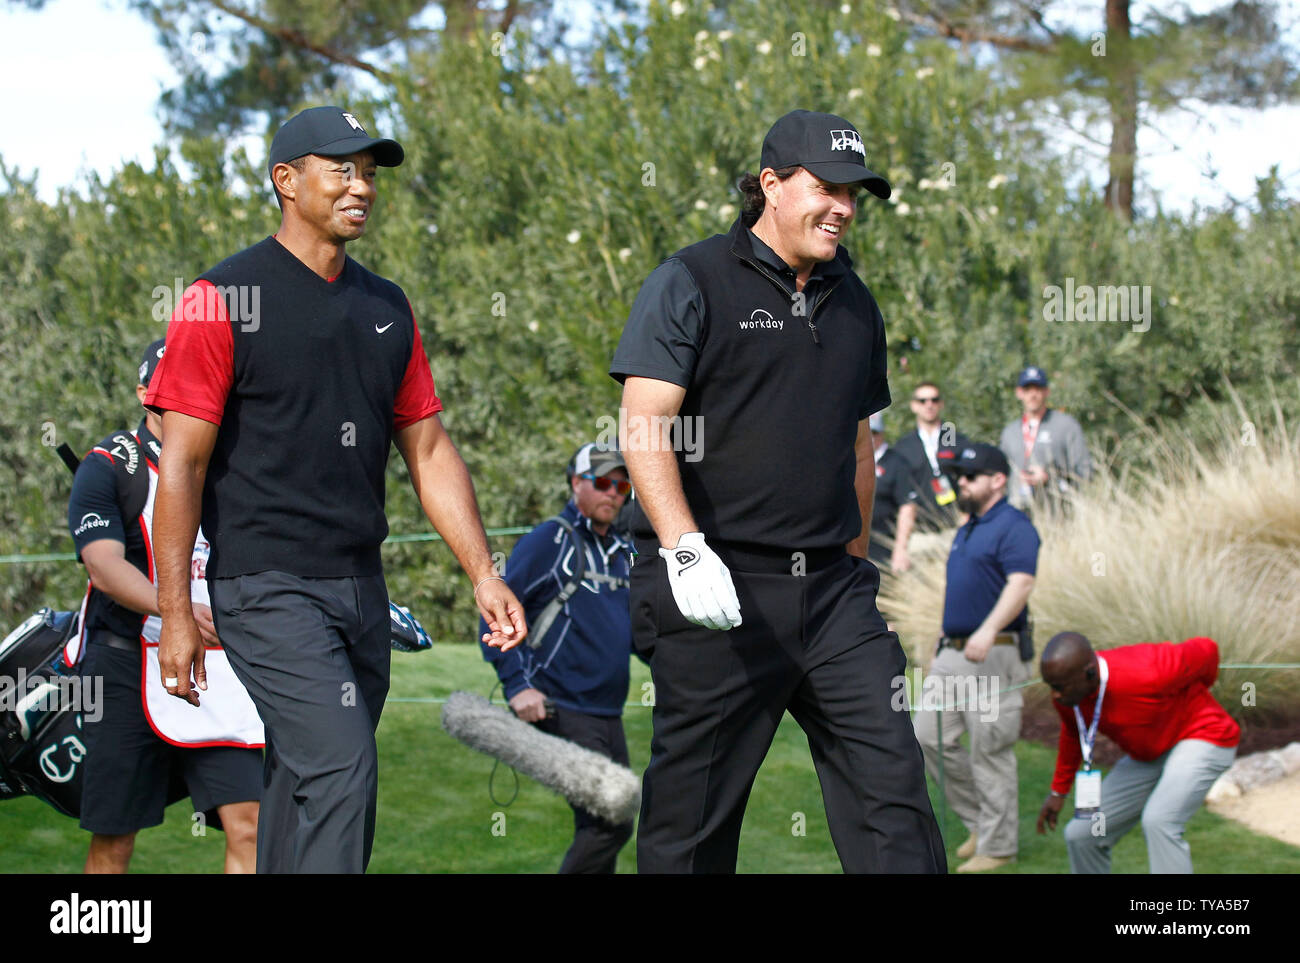 Longtime rivali di Tiger Woods e Phil Mickelson a competere in pay-per-view il vincitore prende tutto $9 milioni di dollari di partita di golf a Shadow Creek Golf a Las Vegas, Nevada, il 23 novembre 2018. Foto di James Atoa/UPI Foto Stock